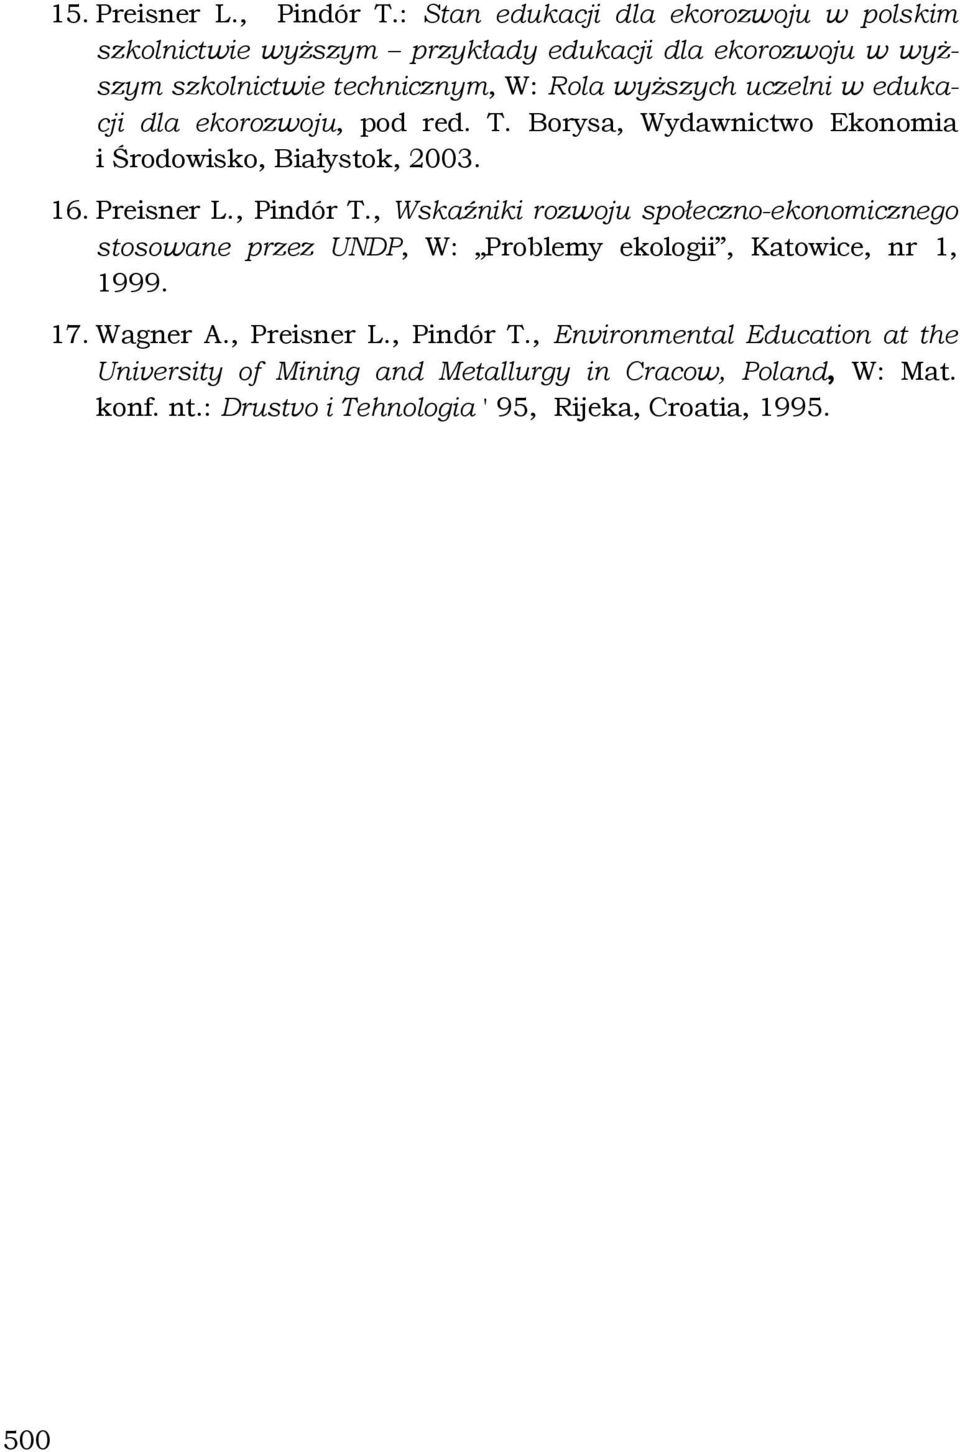 uczelni w edukacji dla ekorozwoju, pod red. T. Borysa, Wydawnictwo Ekonomia i Środowisko, Białystok, 2003. 16. Preisner L., Pindór T.